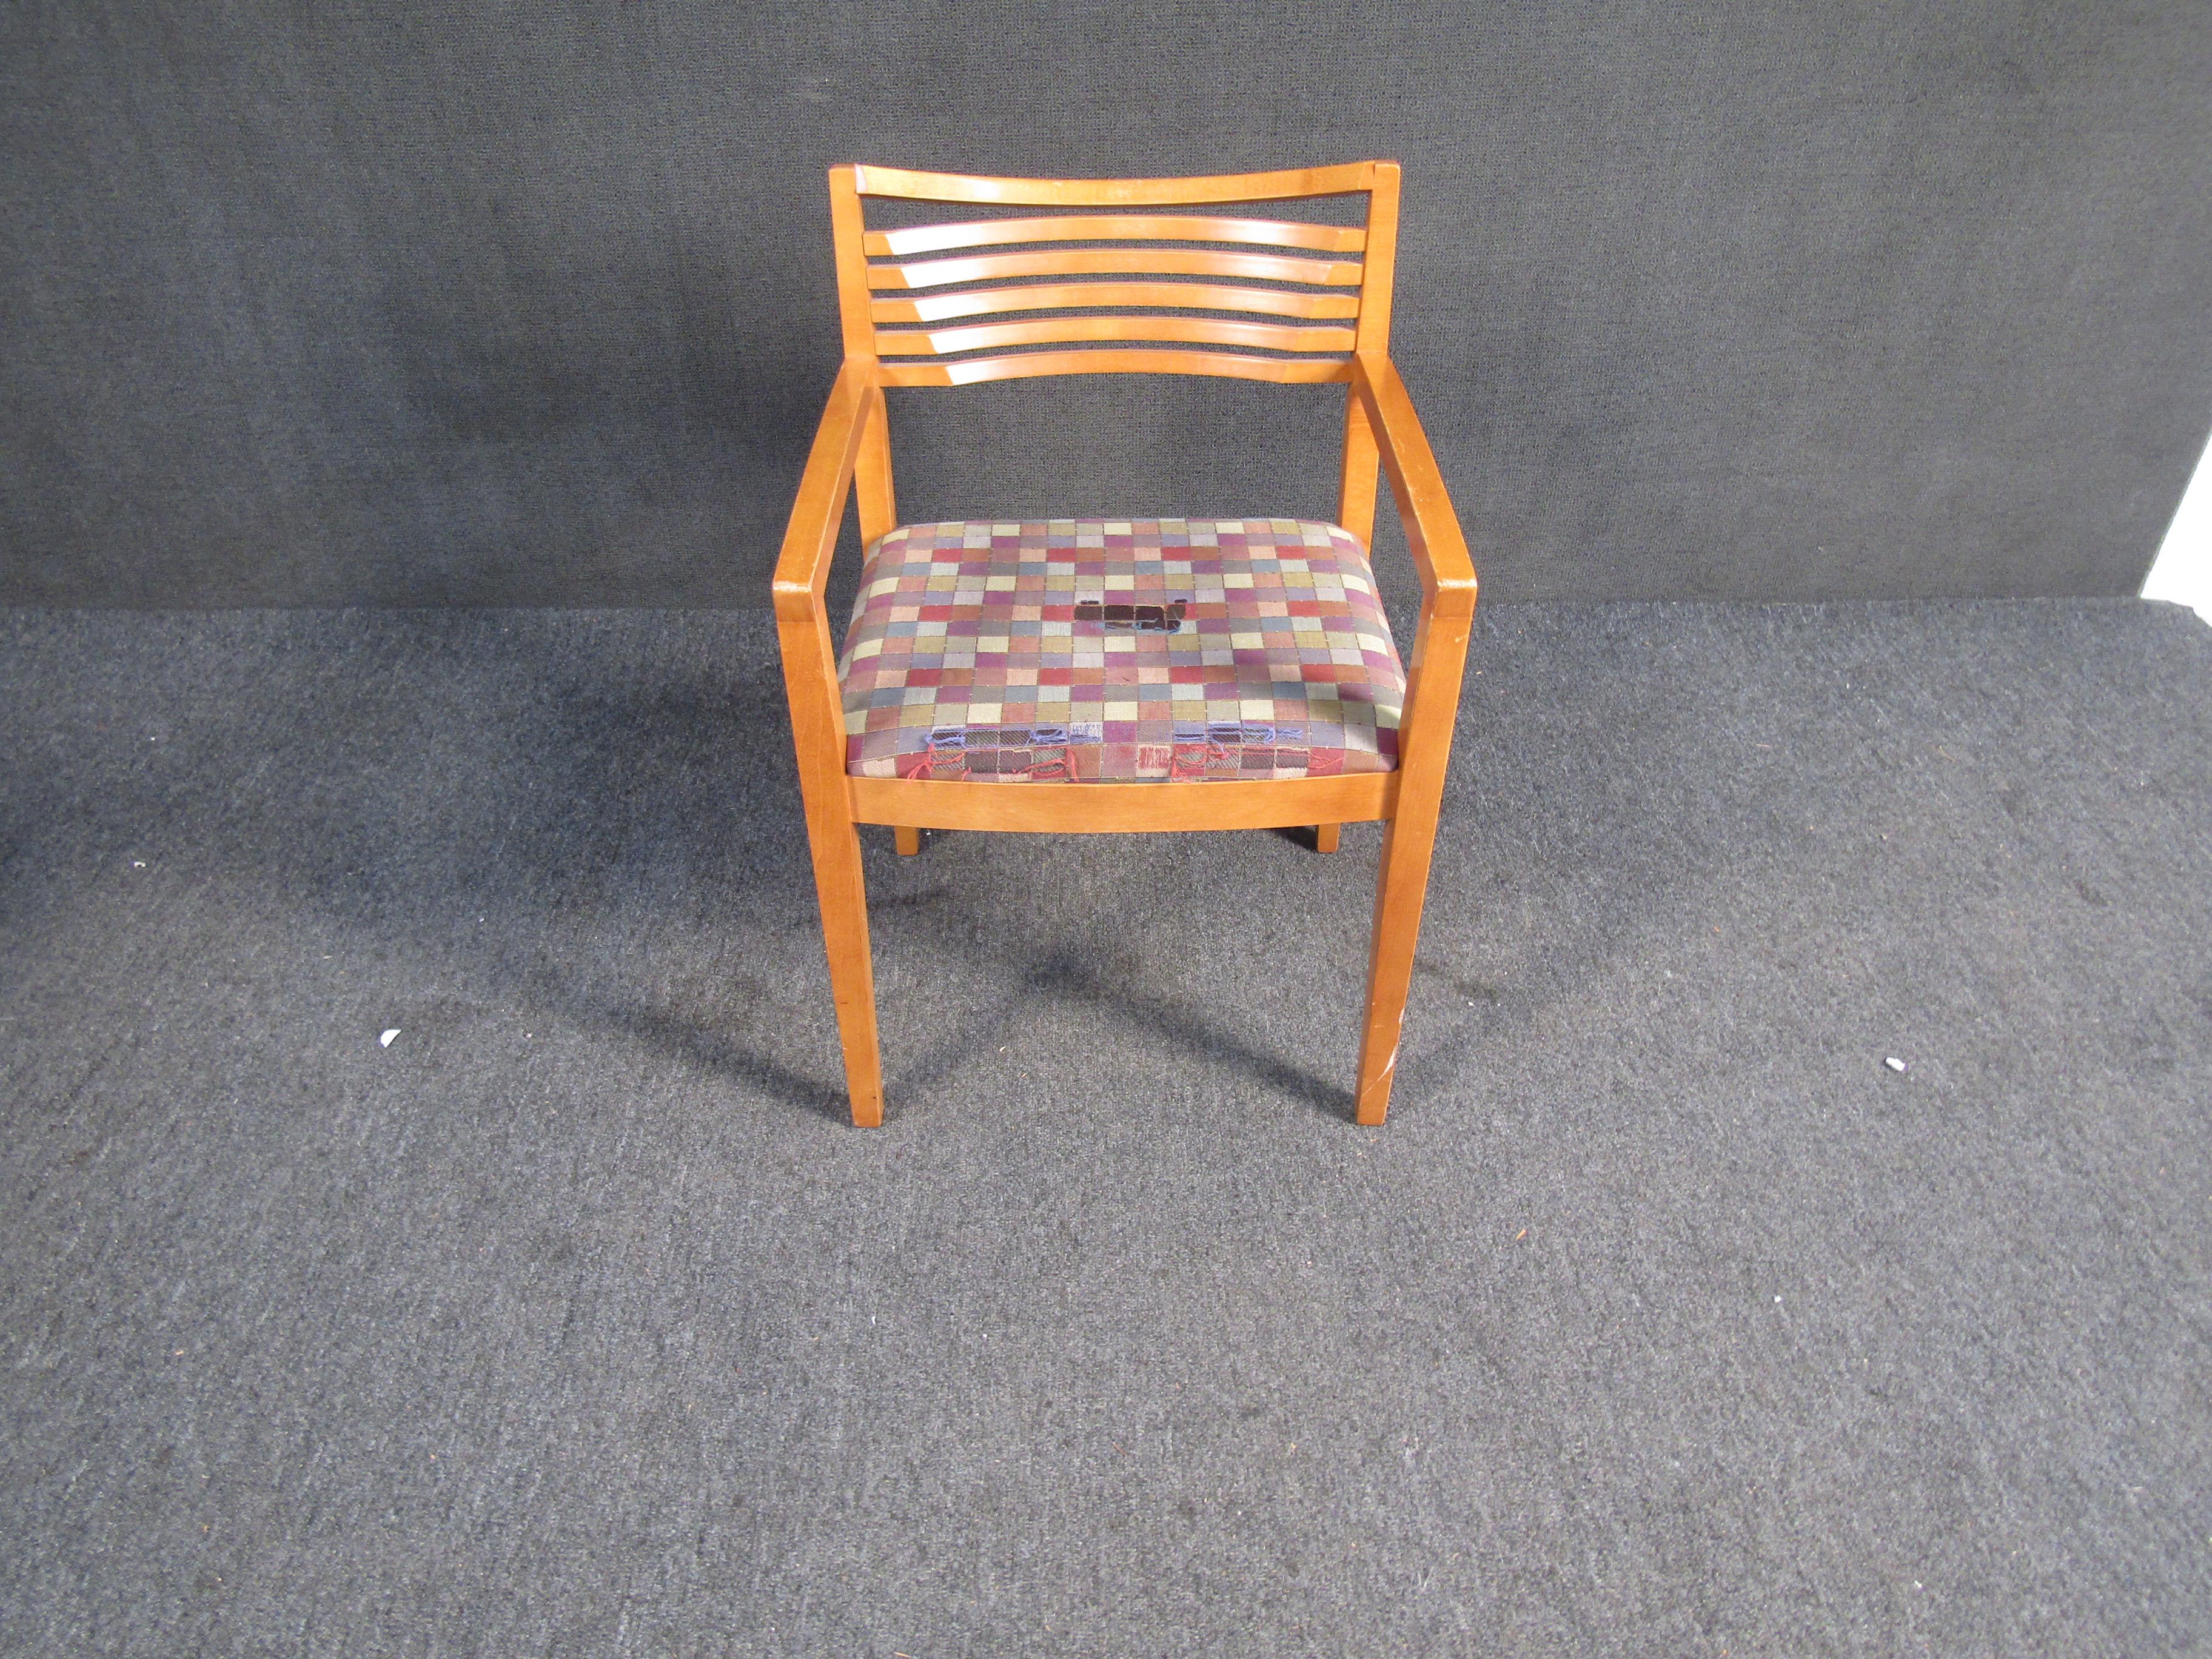 Ein einfacher, von Knoll inspirierter Stuhl, der neu gepolstert werden kann und eine großartige Ergänzung für jeden Wohnbereich darstellt. Dieser Stuhl ist ganz aus Holz gefertigt und hat eine Rückenlehne mit Lattenrost und einen Sitz aus